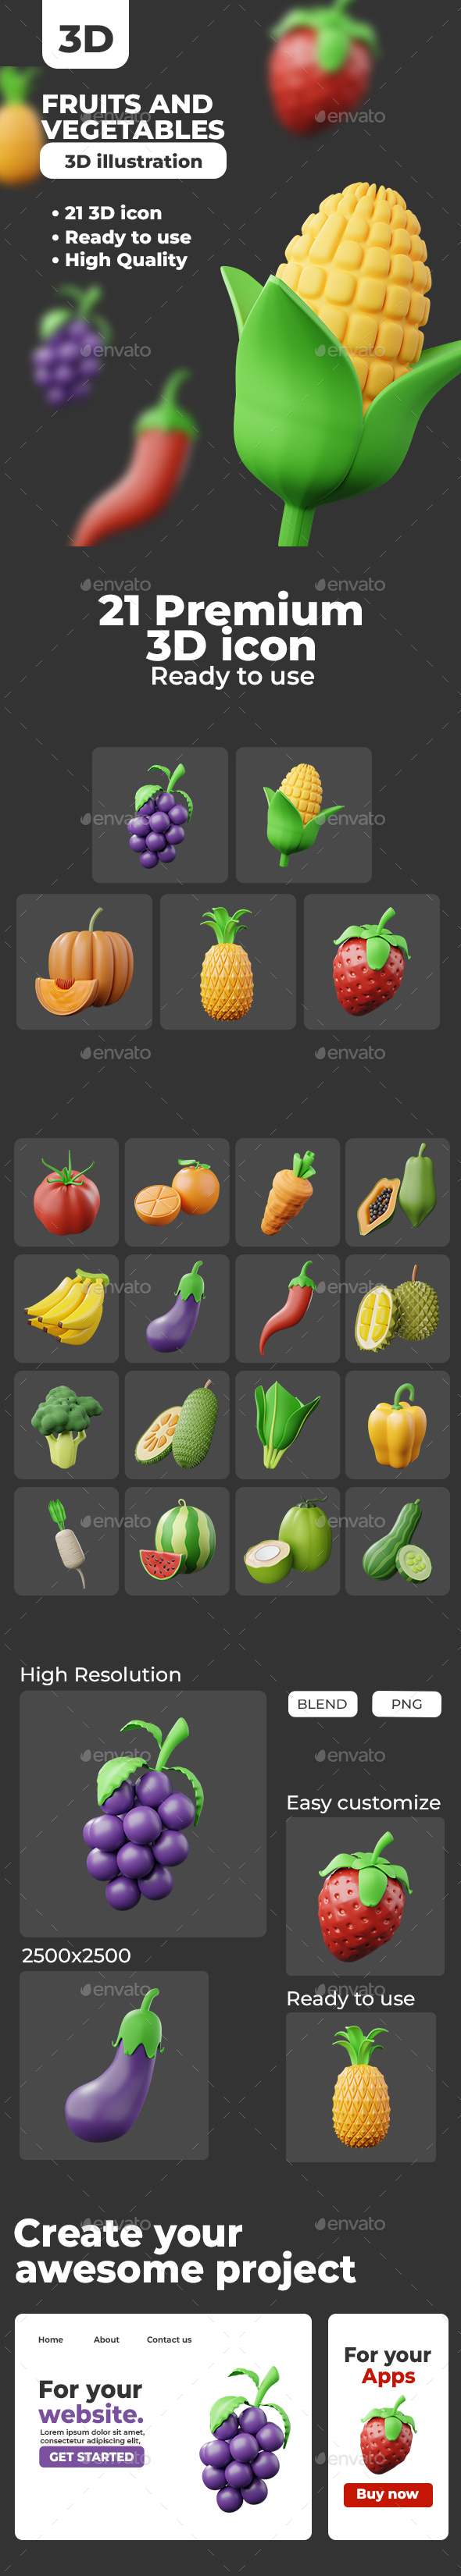 Fruits and vegetables 3d illustration